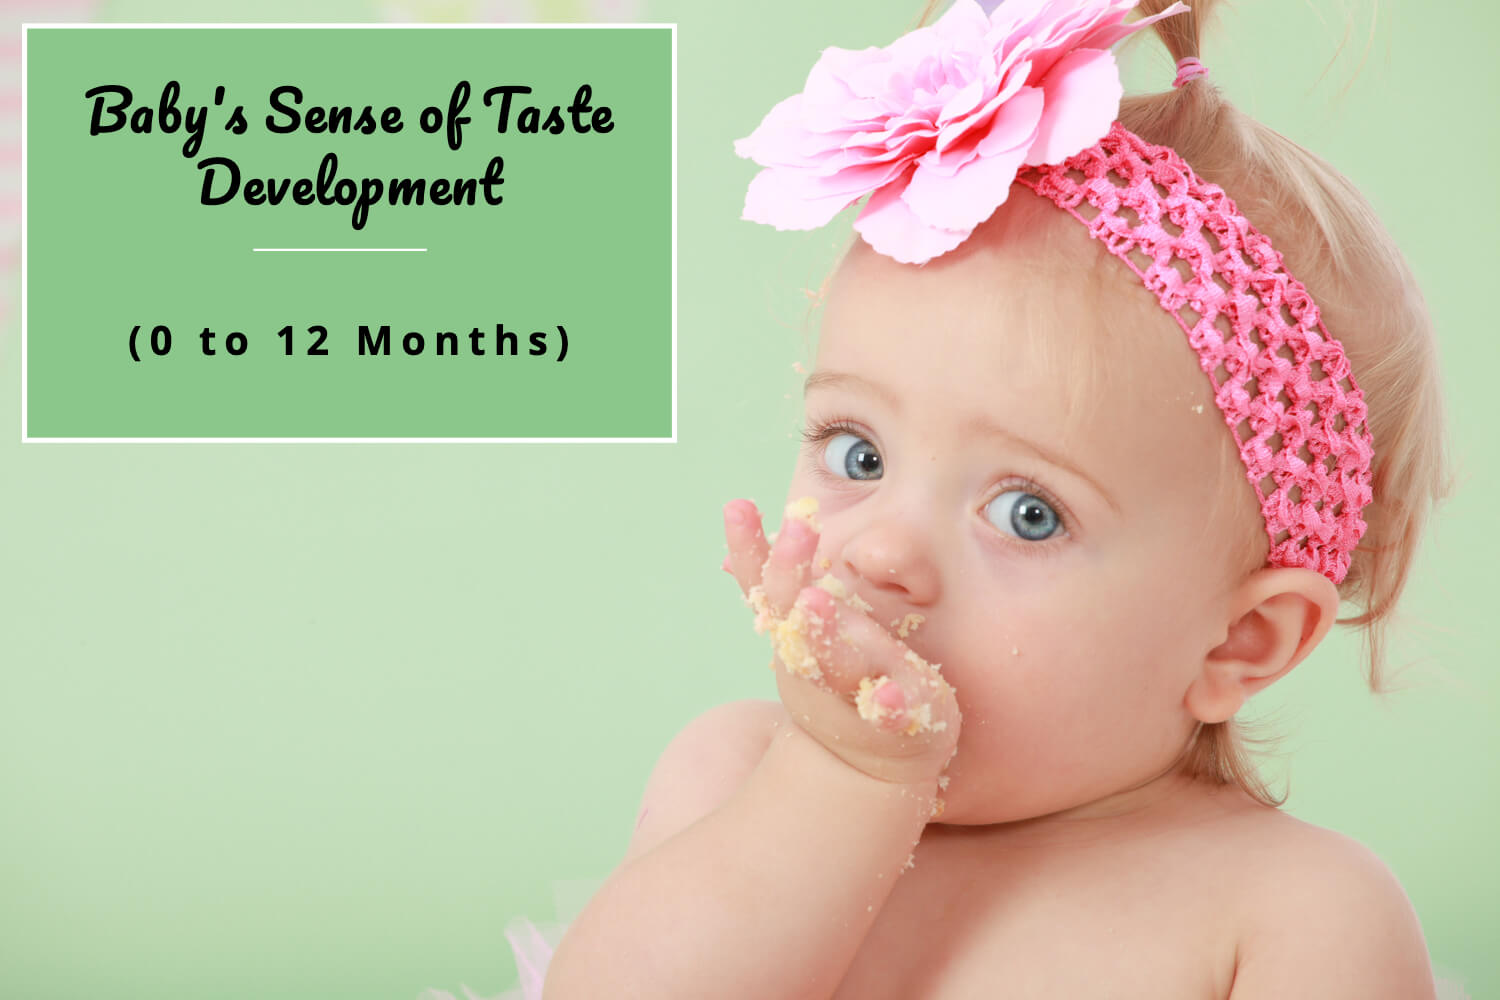 Baby's Sense of Taste Development